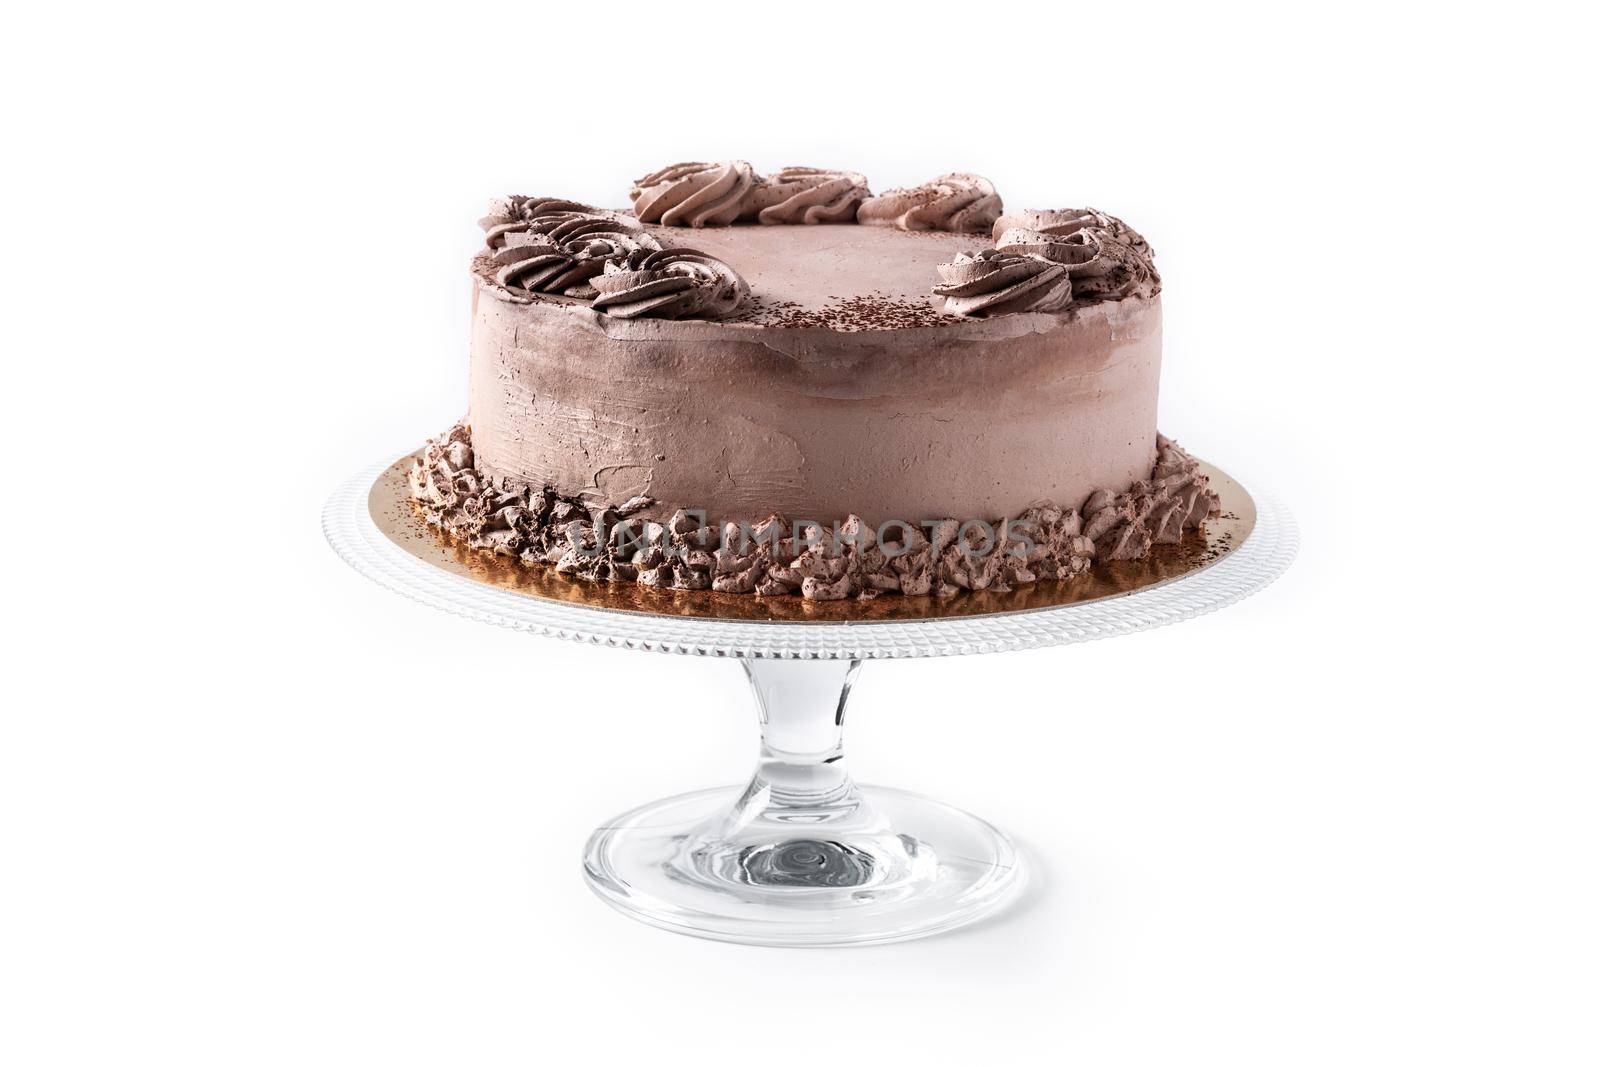 Chocolate truffle cake isolated on white background